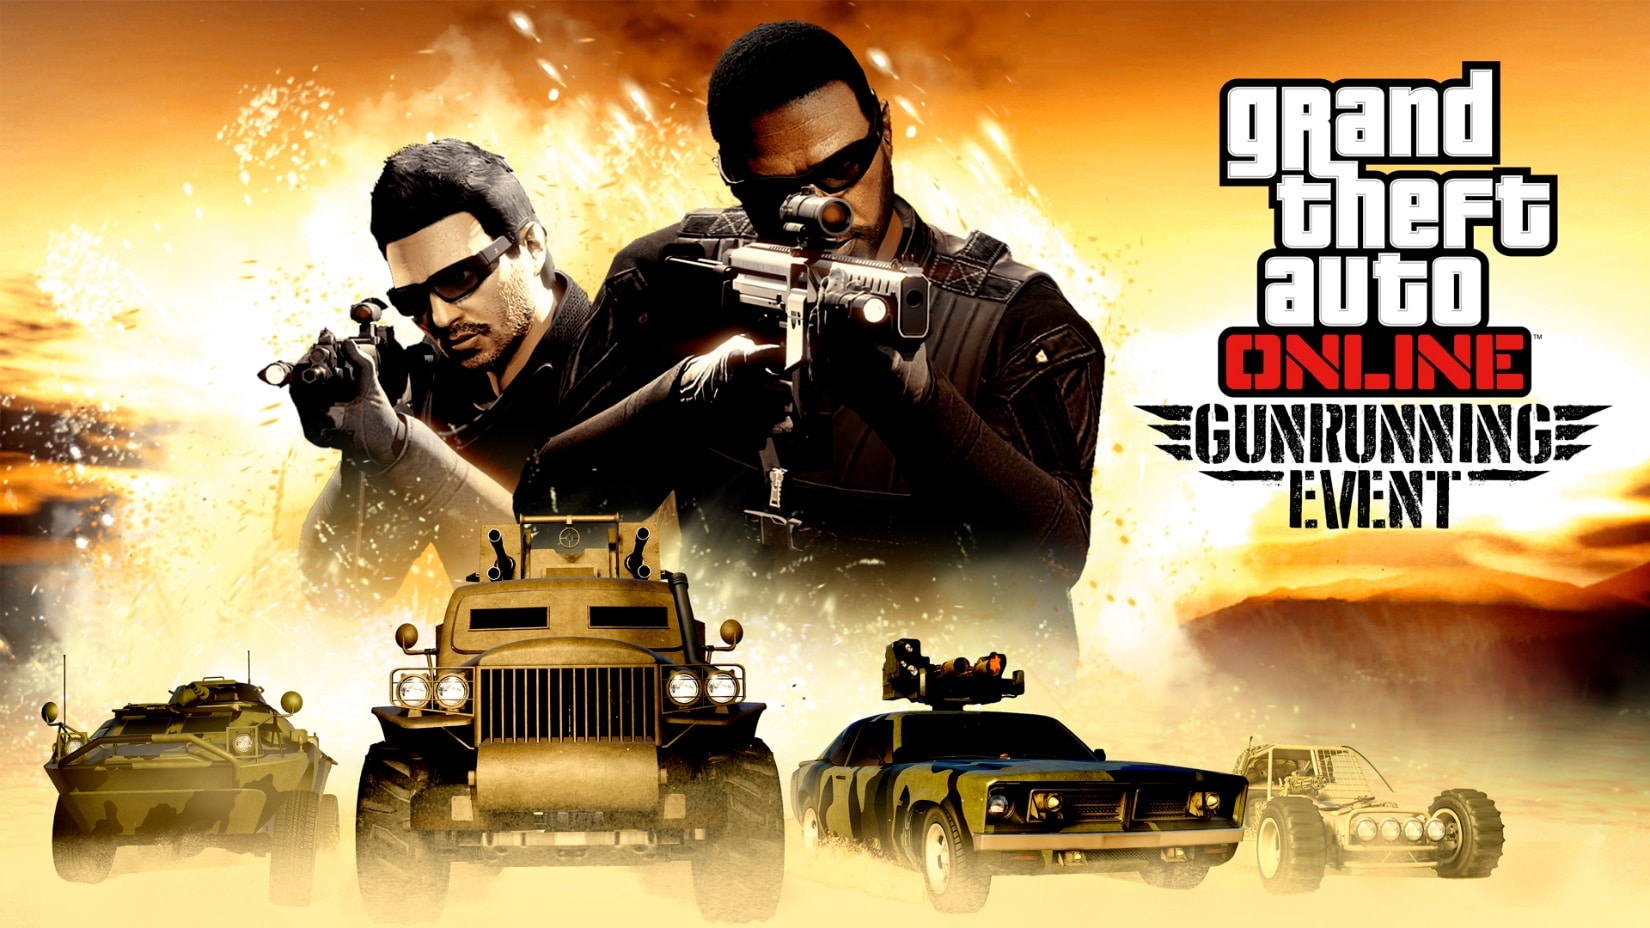 GTA Online Bonificaciones en misiones de venta de Tráfico de armas, recompensas triples en la serie de búnker y mucho más, GamersRD